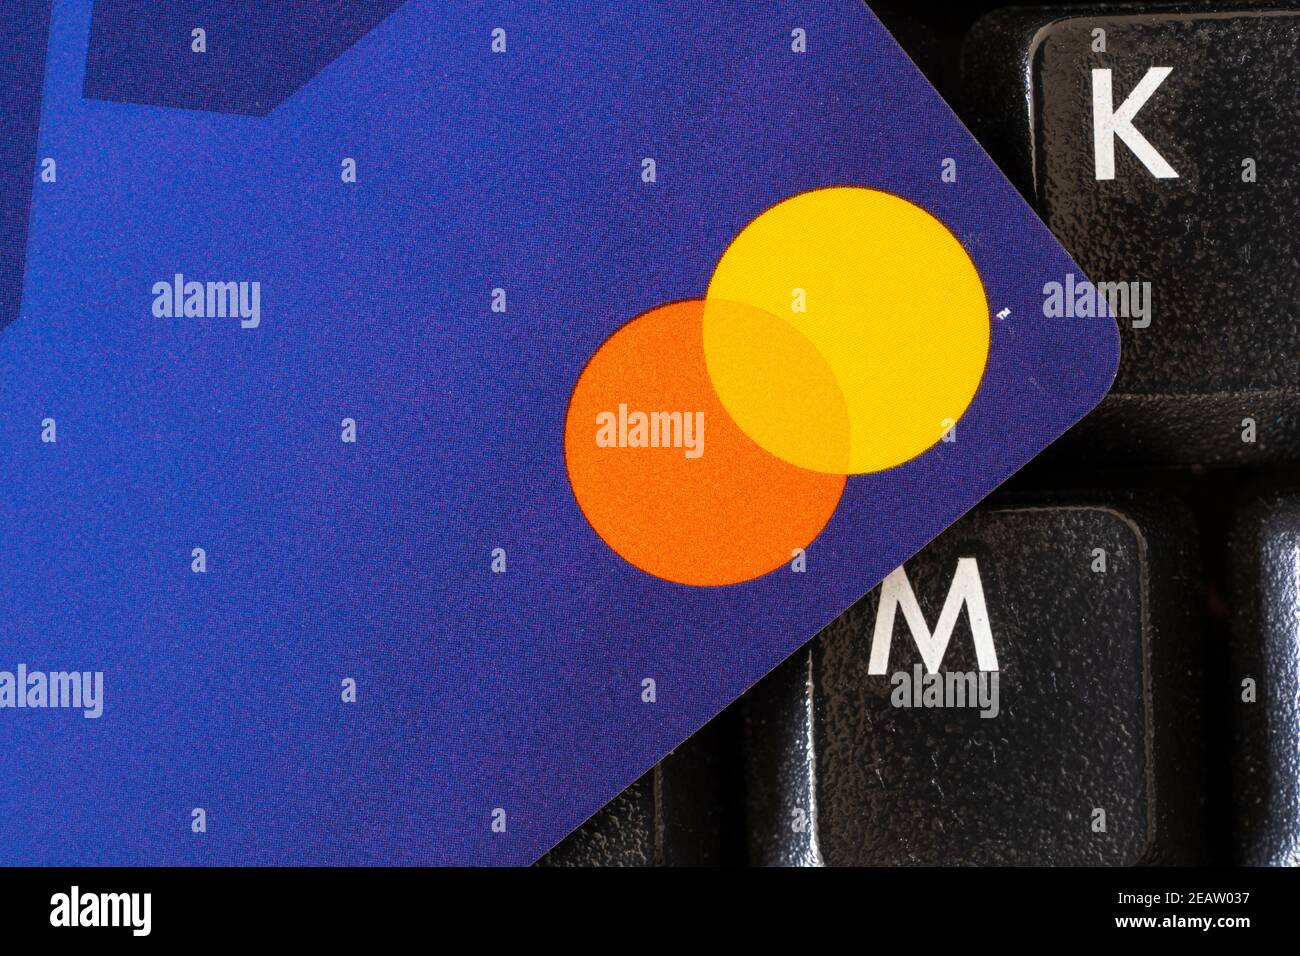 Un primo piano dell'angolo di una carta di credito minimalista senza numero di carta e il logo Mastercard, poggiato su una tastiera. Tema - debito, società senza contanti Foto Stock